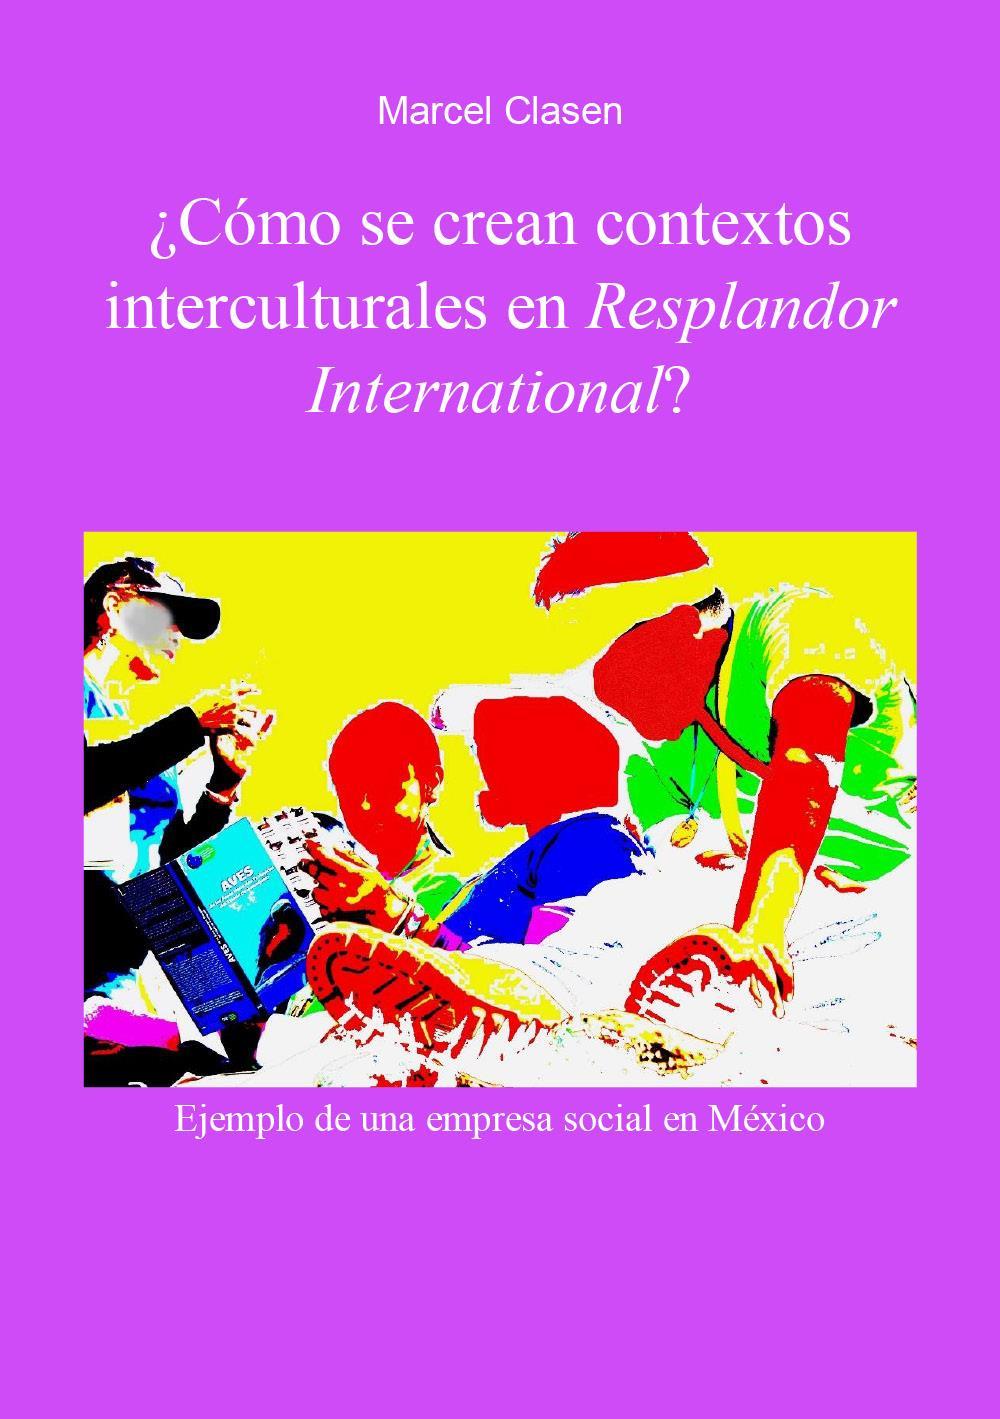 ¿Cómo se crean contextos interculturales en Resplandor International?